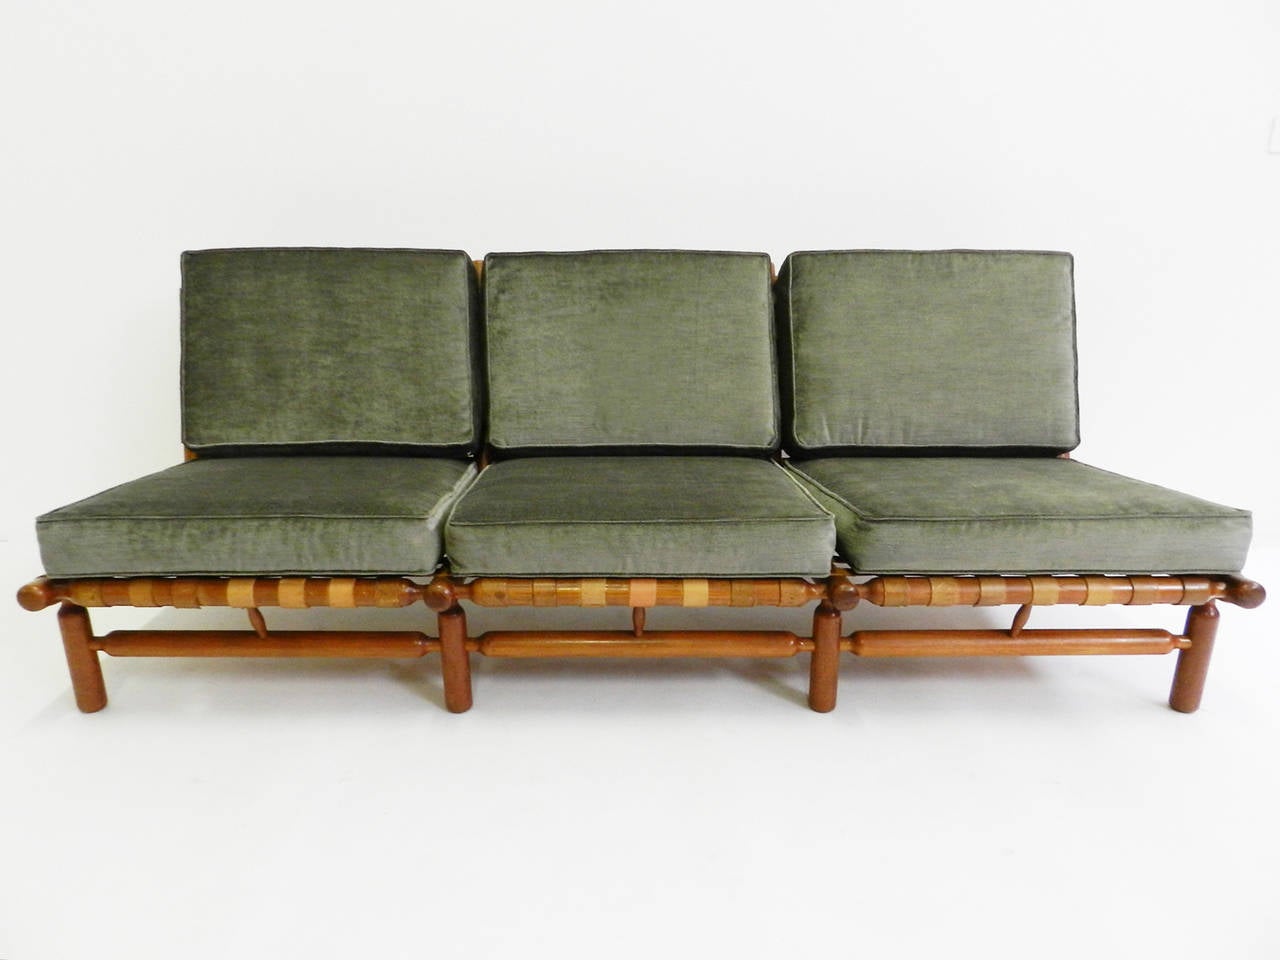 Rare 1957 Tapiovaara Lounge Chair by Esposizione La Permanente Mobili 1